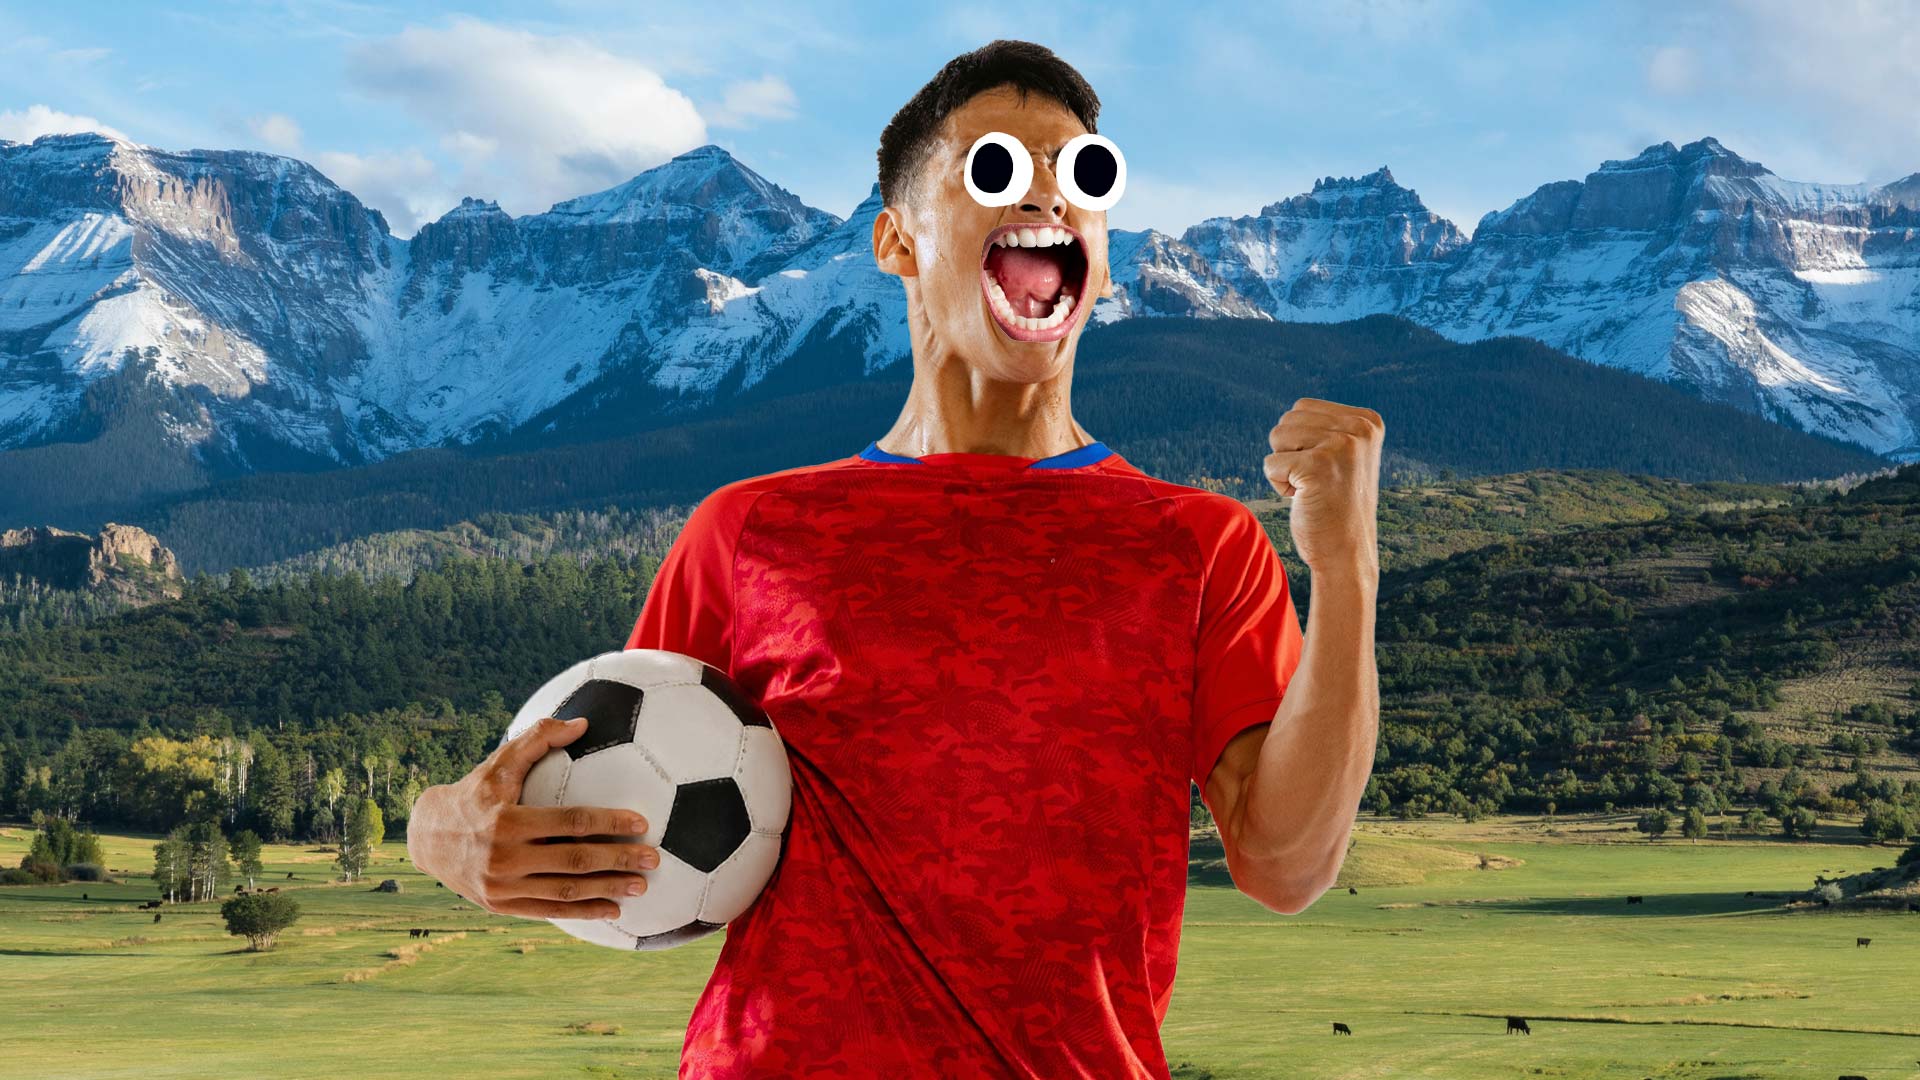 A footballer in the Colorado mountains